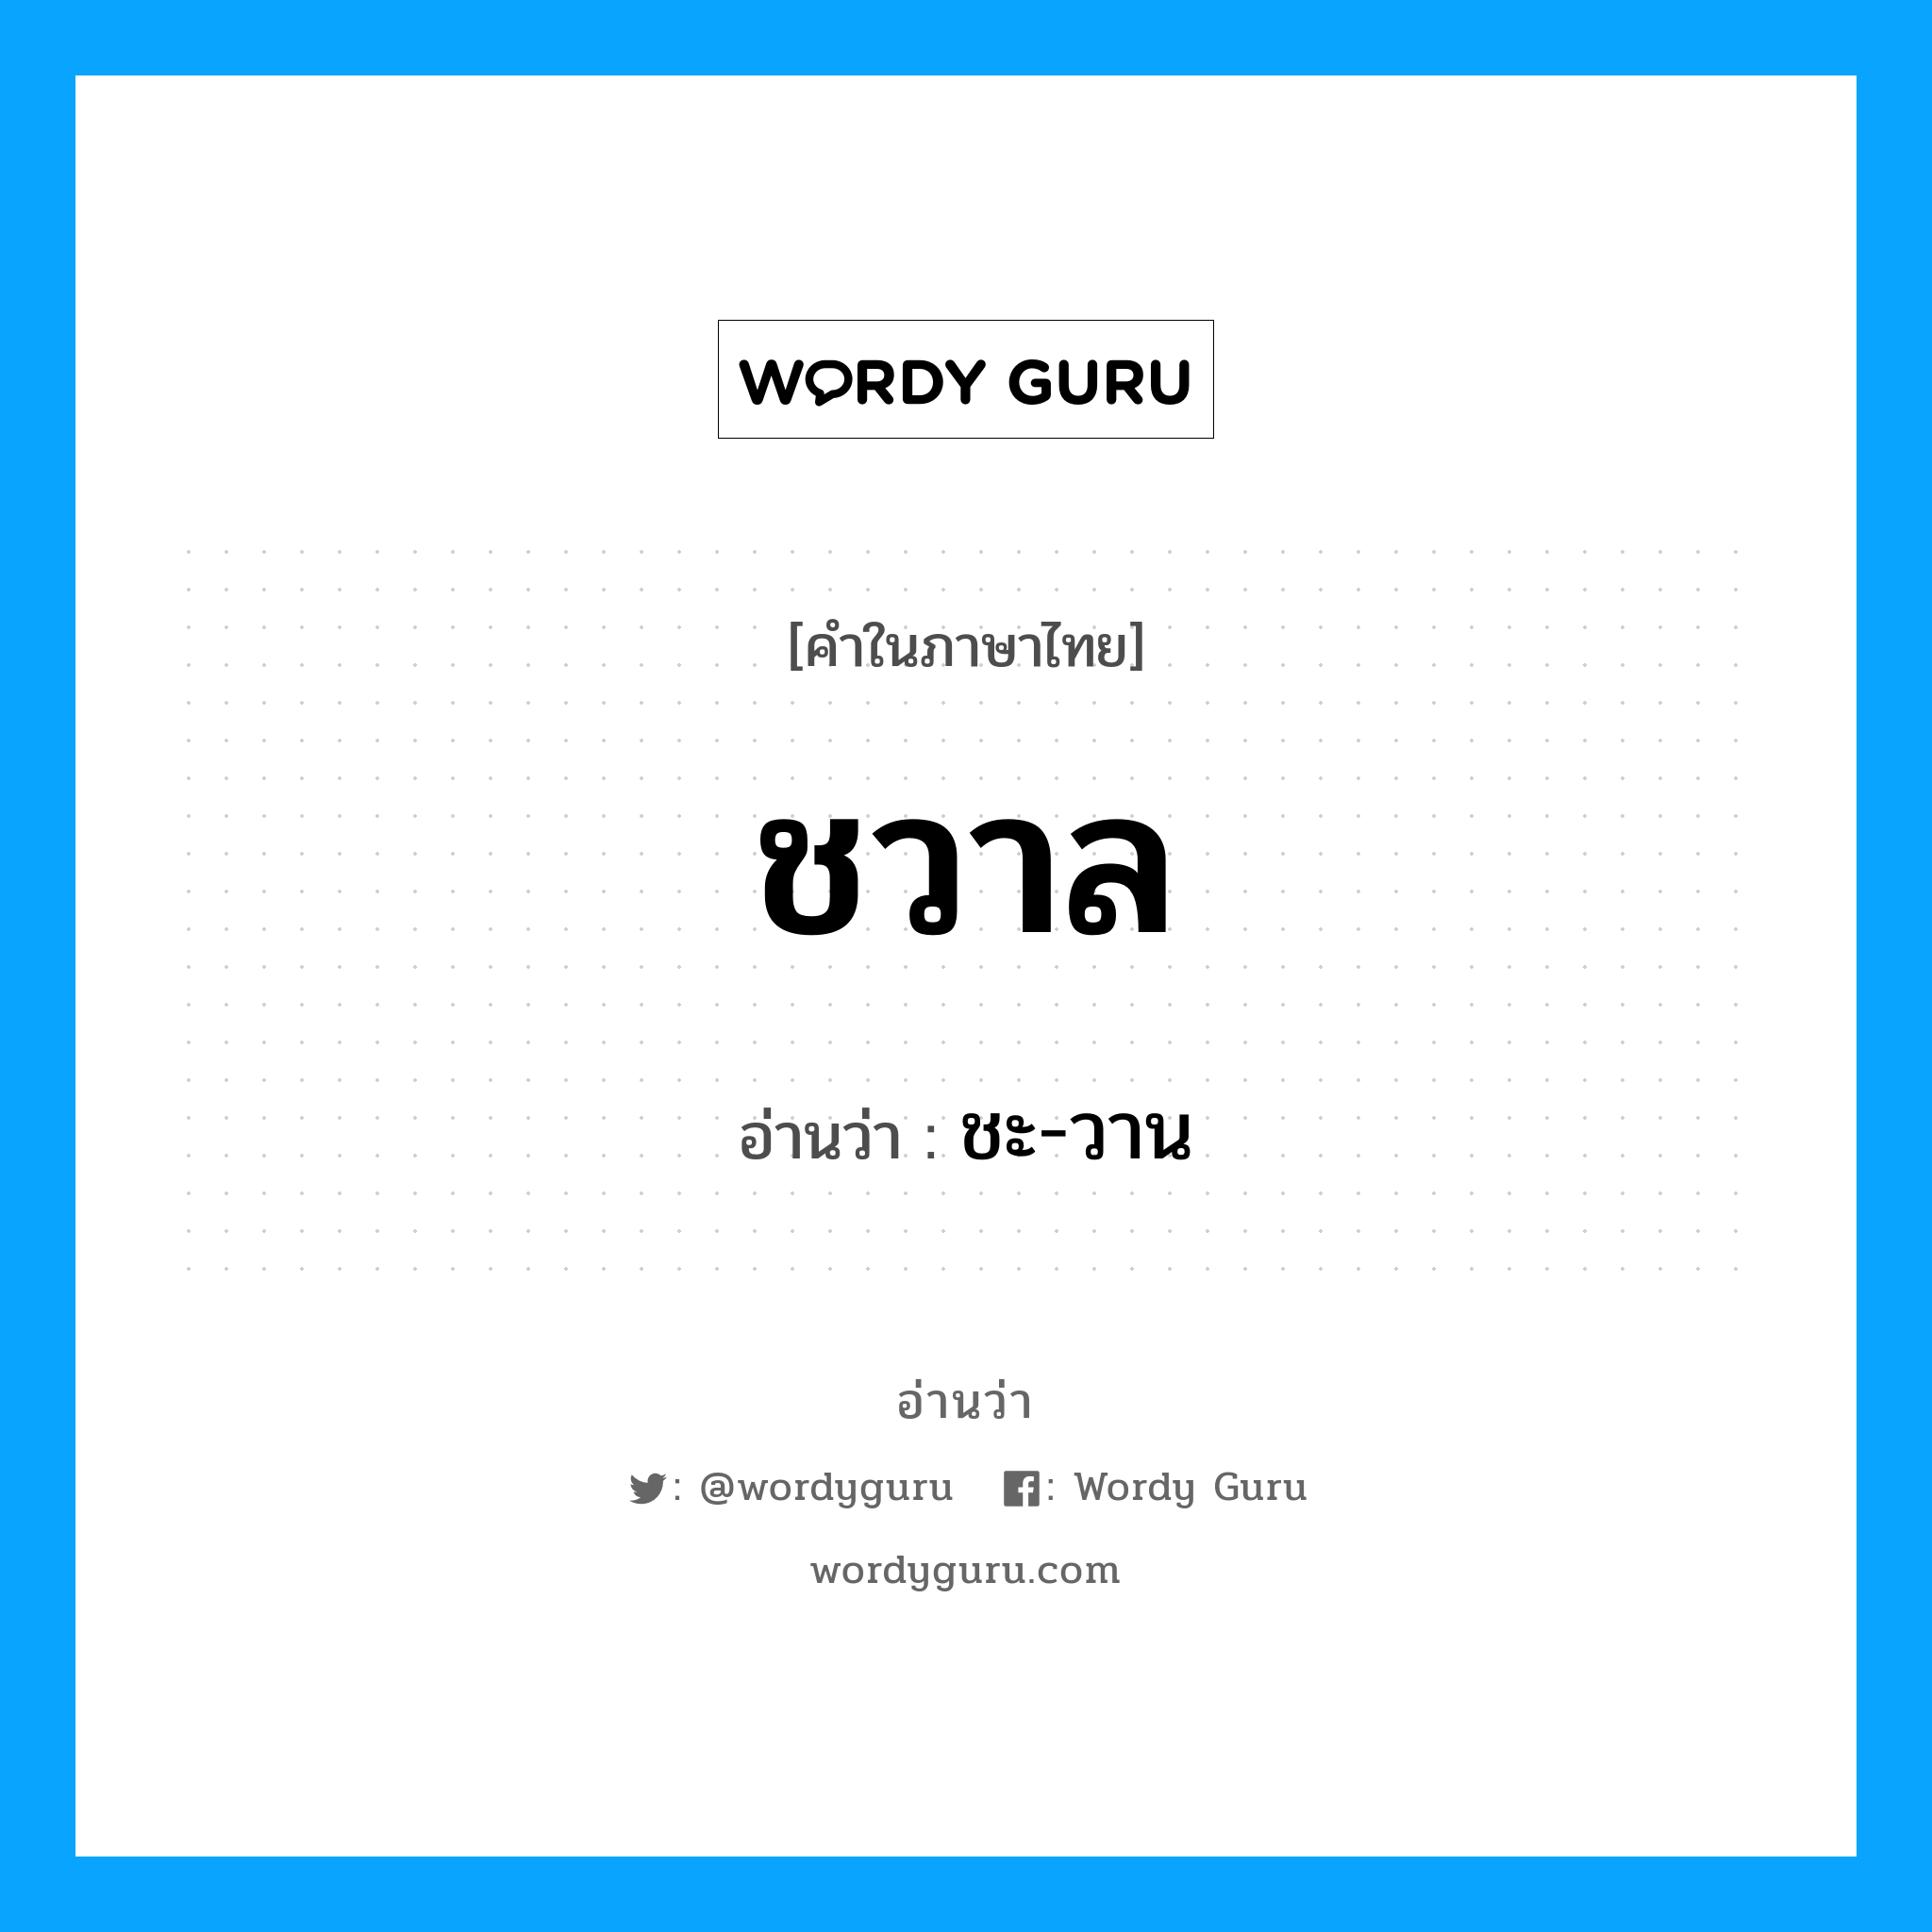 ชะ-วาน เป็นคำอ่านของคำไหน?, คำในภาษาไทย ชะ-วาน อ่านว่า ชวาล